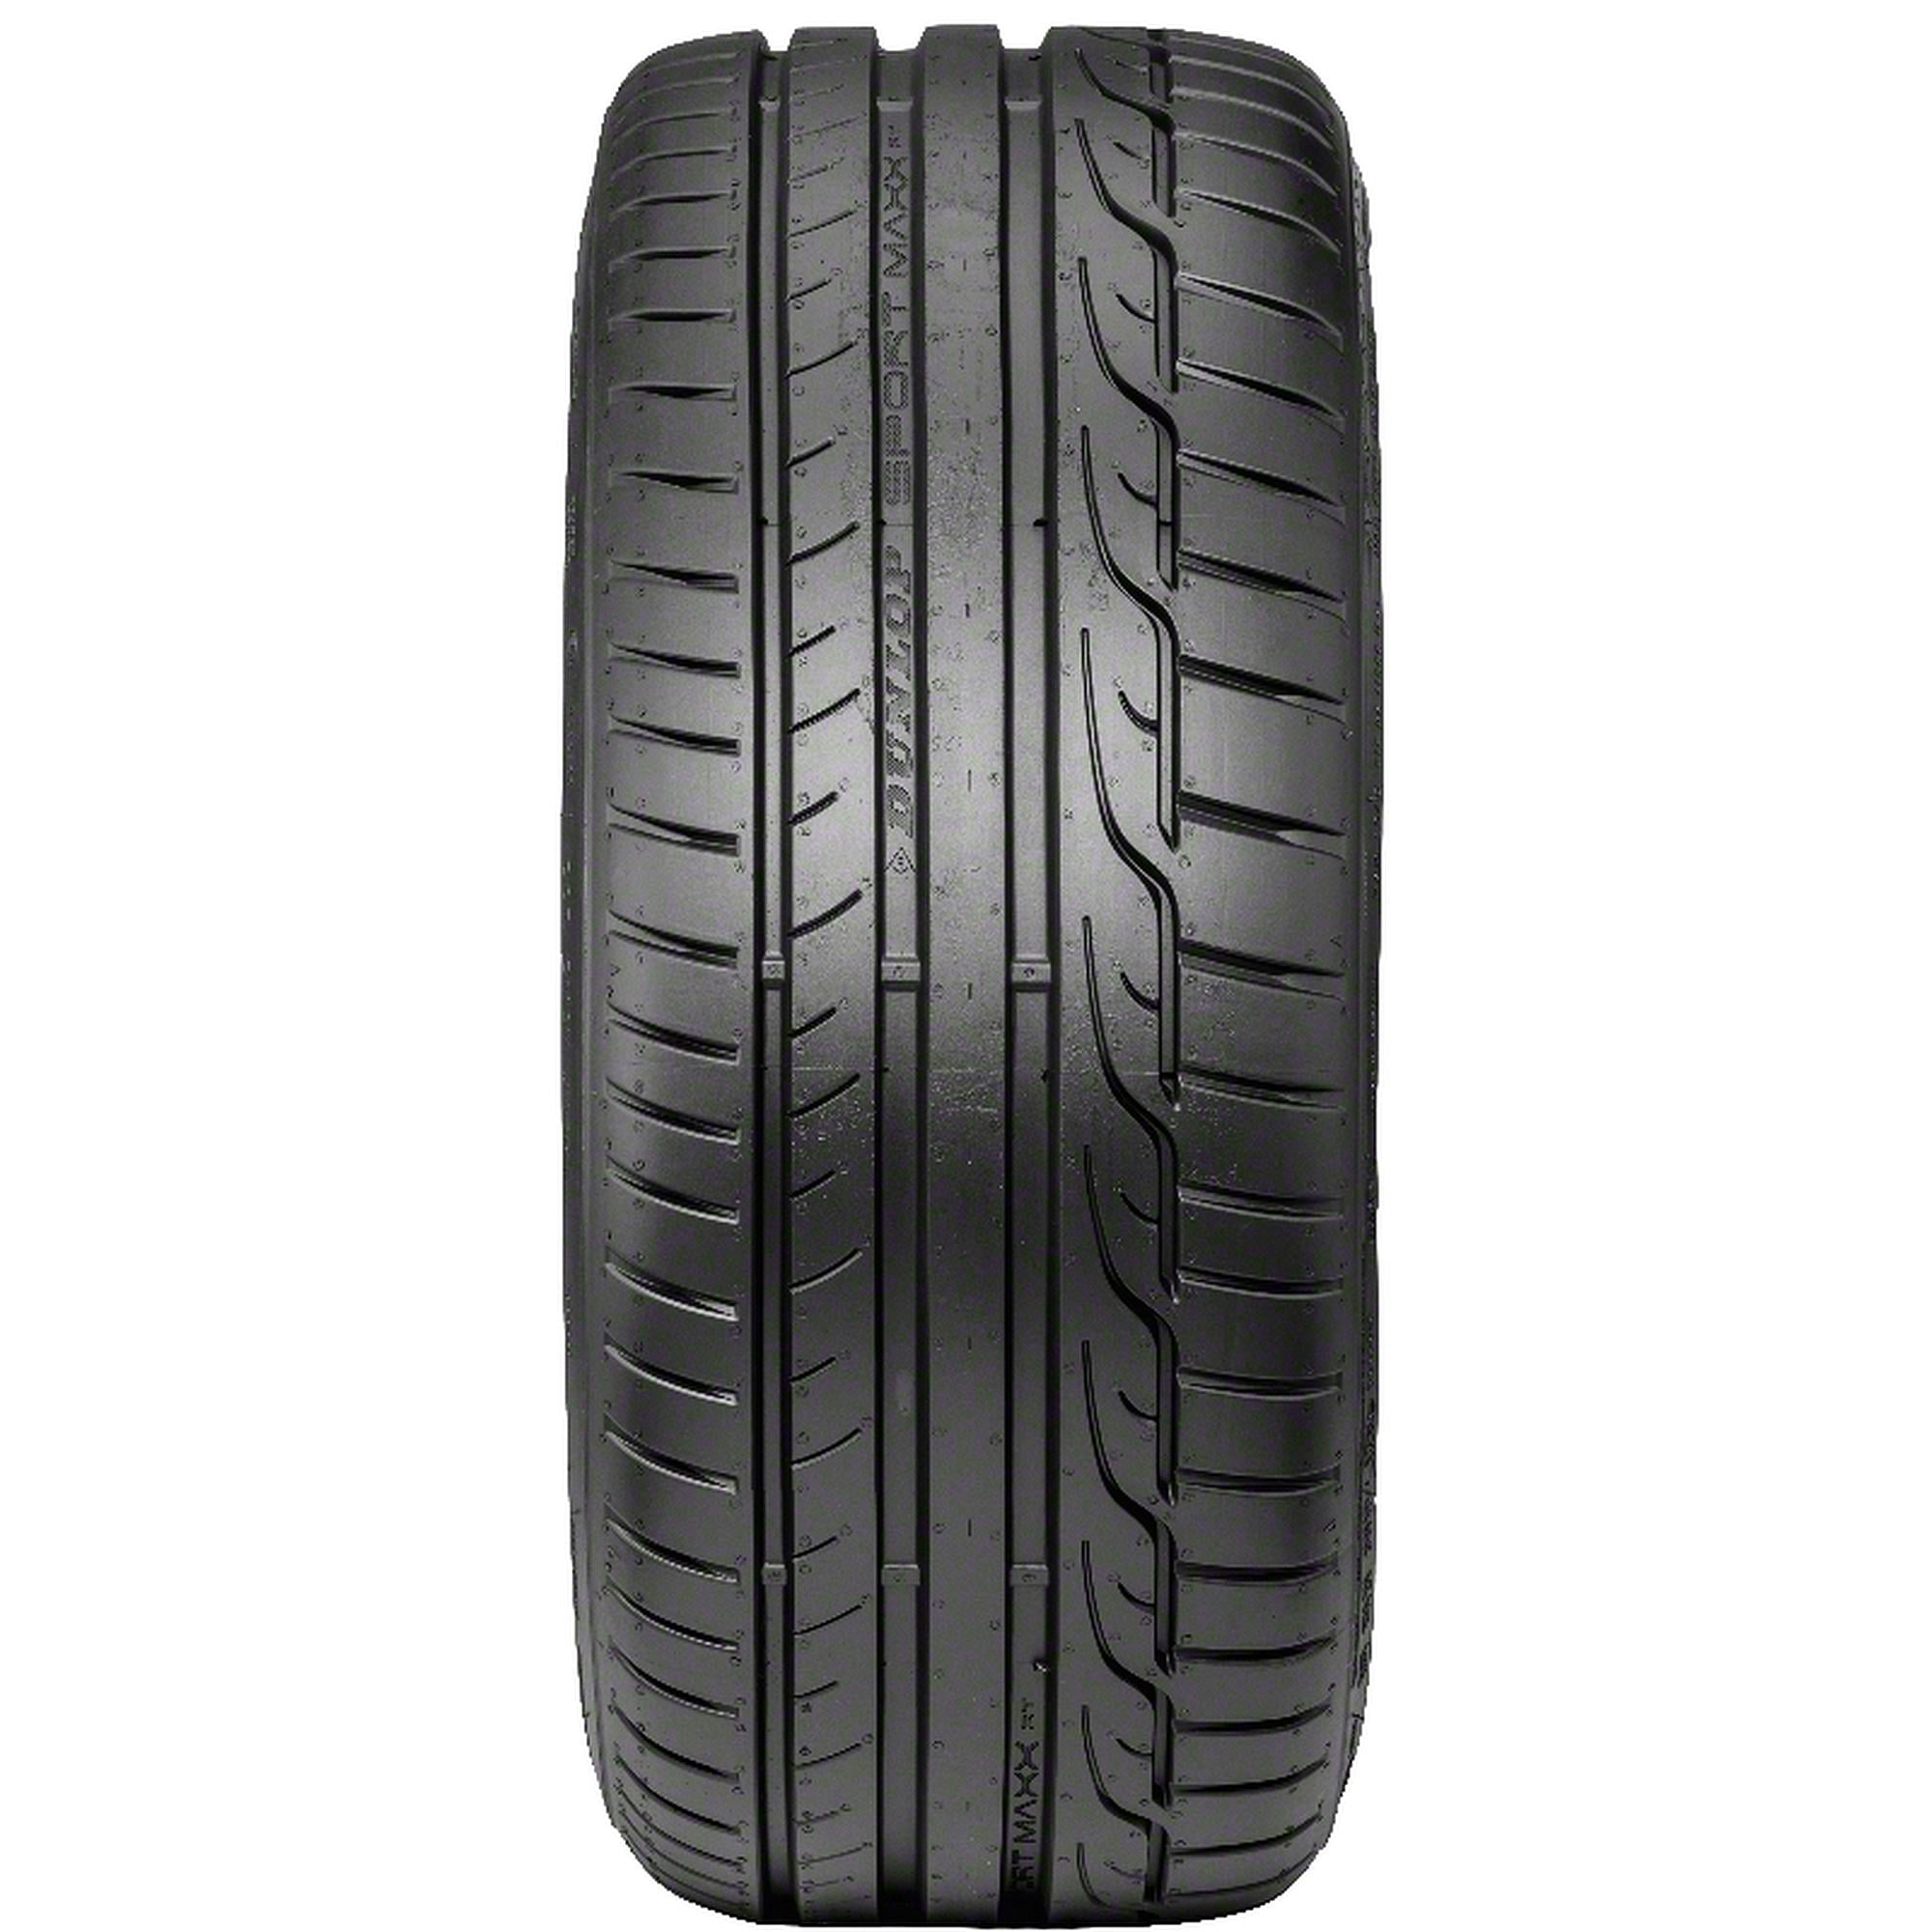 XL Dunlop Racing 97W 245/40R18 Tire Maxx Sport RT Passenger